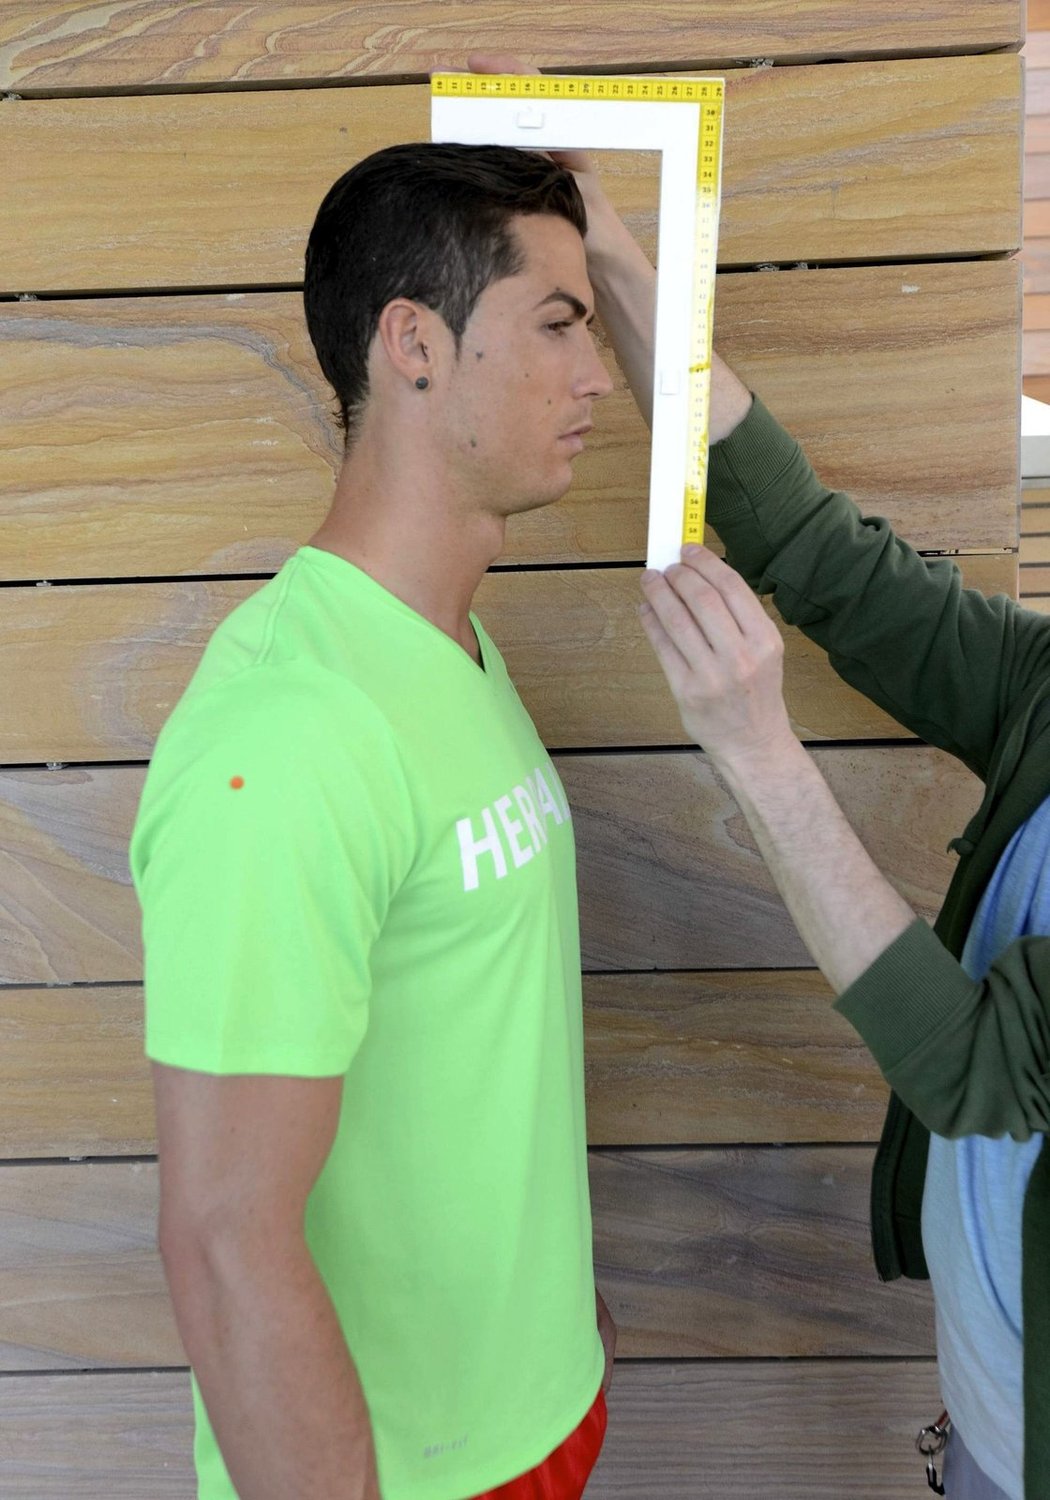 Portugalský kanonýr Realu Madrid Cristiano Ronaldo skoro hodinu stál jako model pro sochaře, kterří se chystají vyrobit jeho podobiznu z vosku a umístit ji do muzea